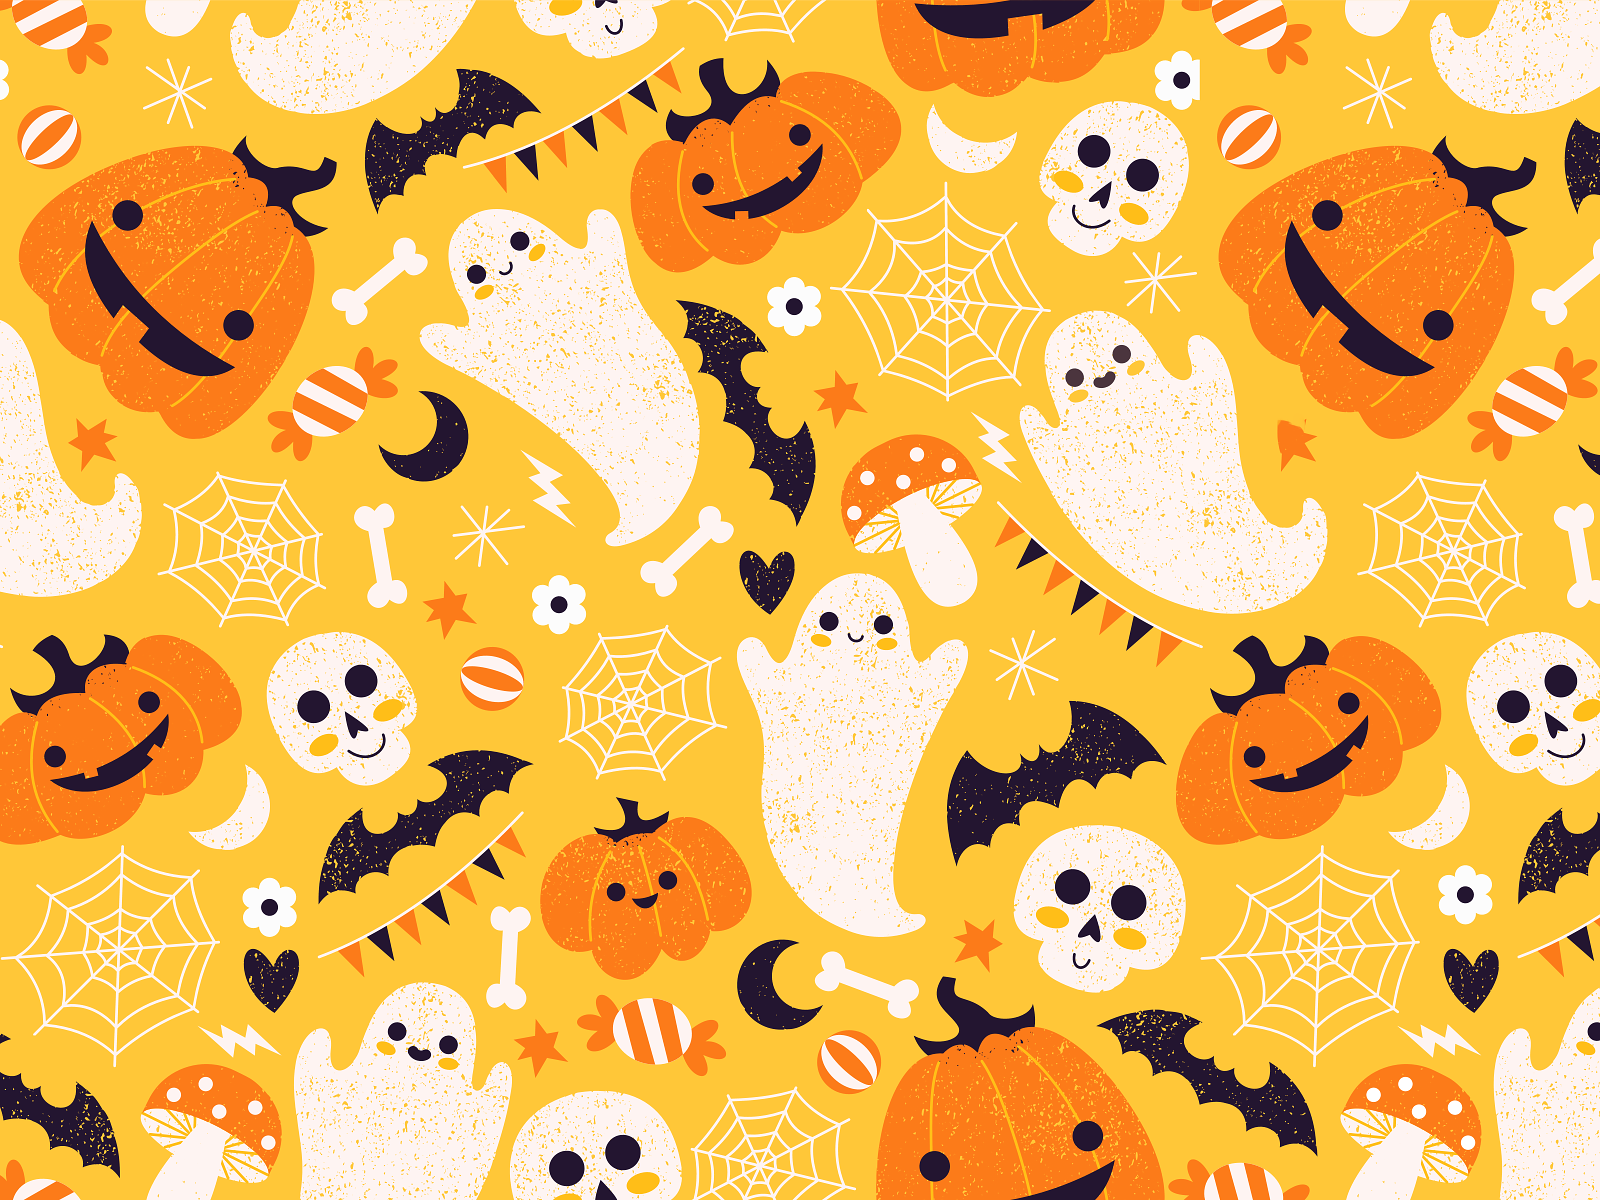 Cute Halloween by Mary Zabaikina on Dribbble